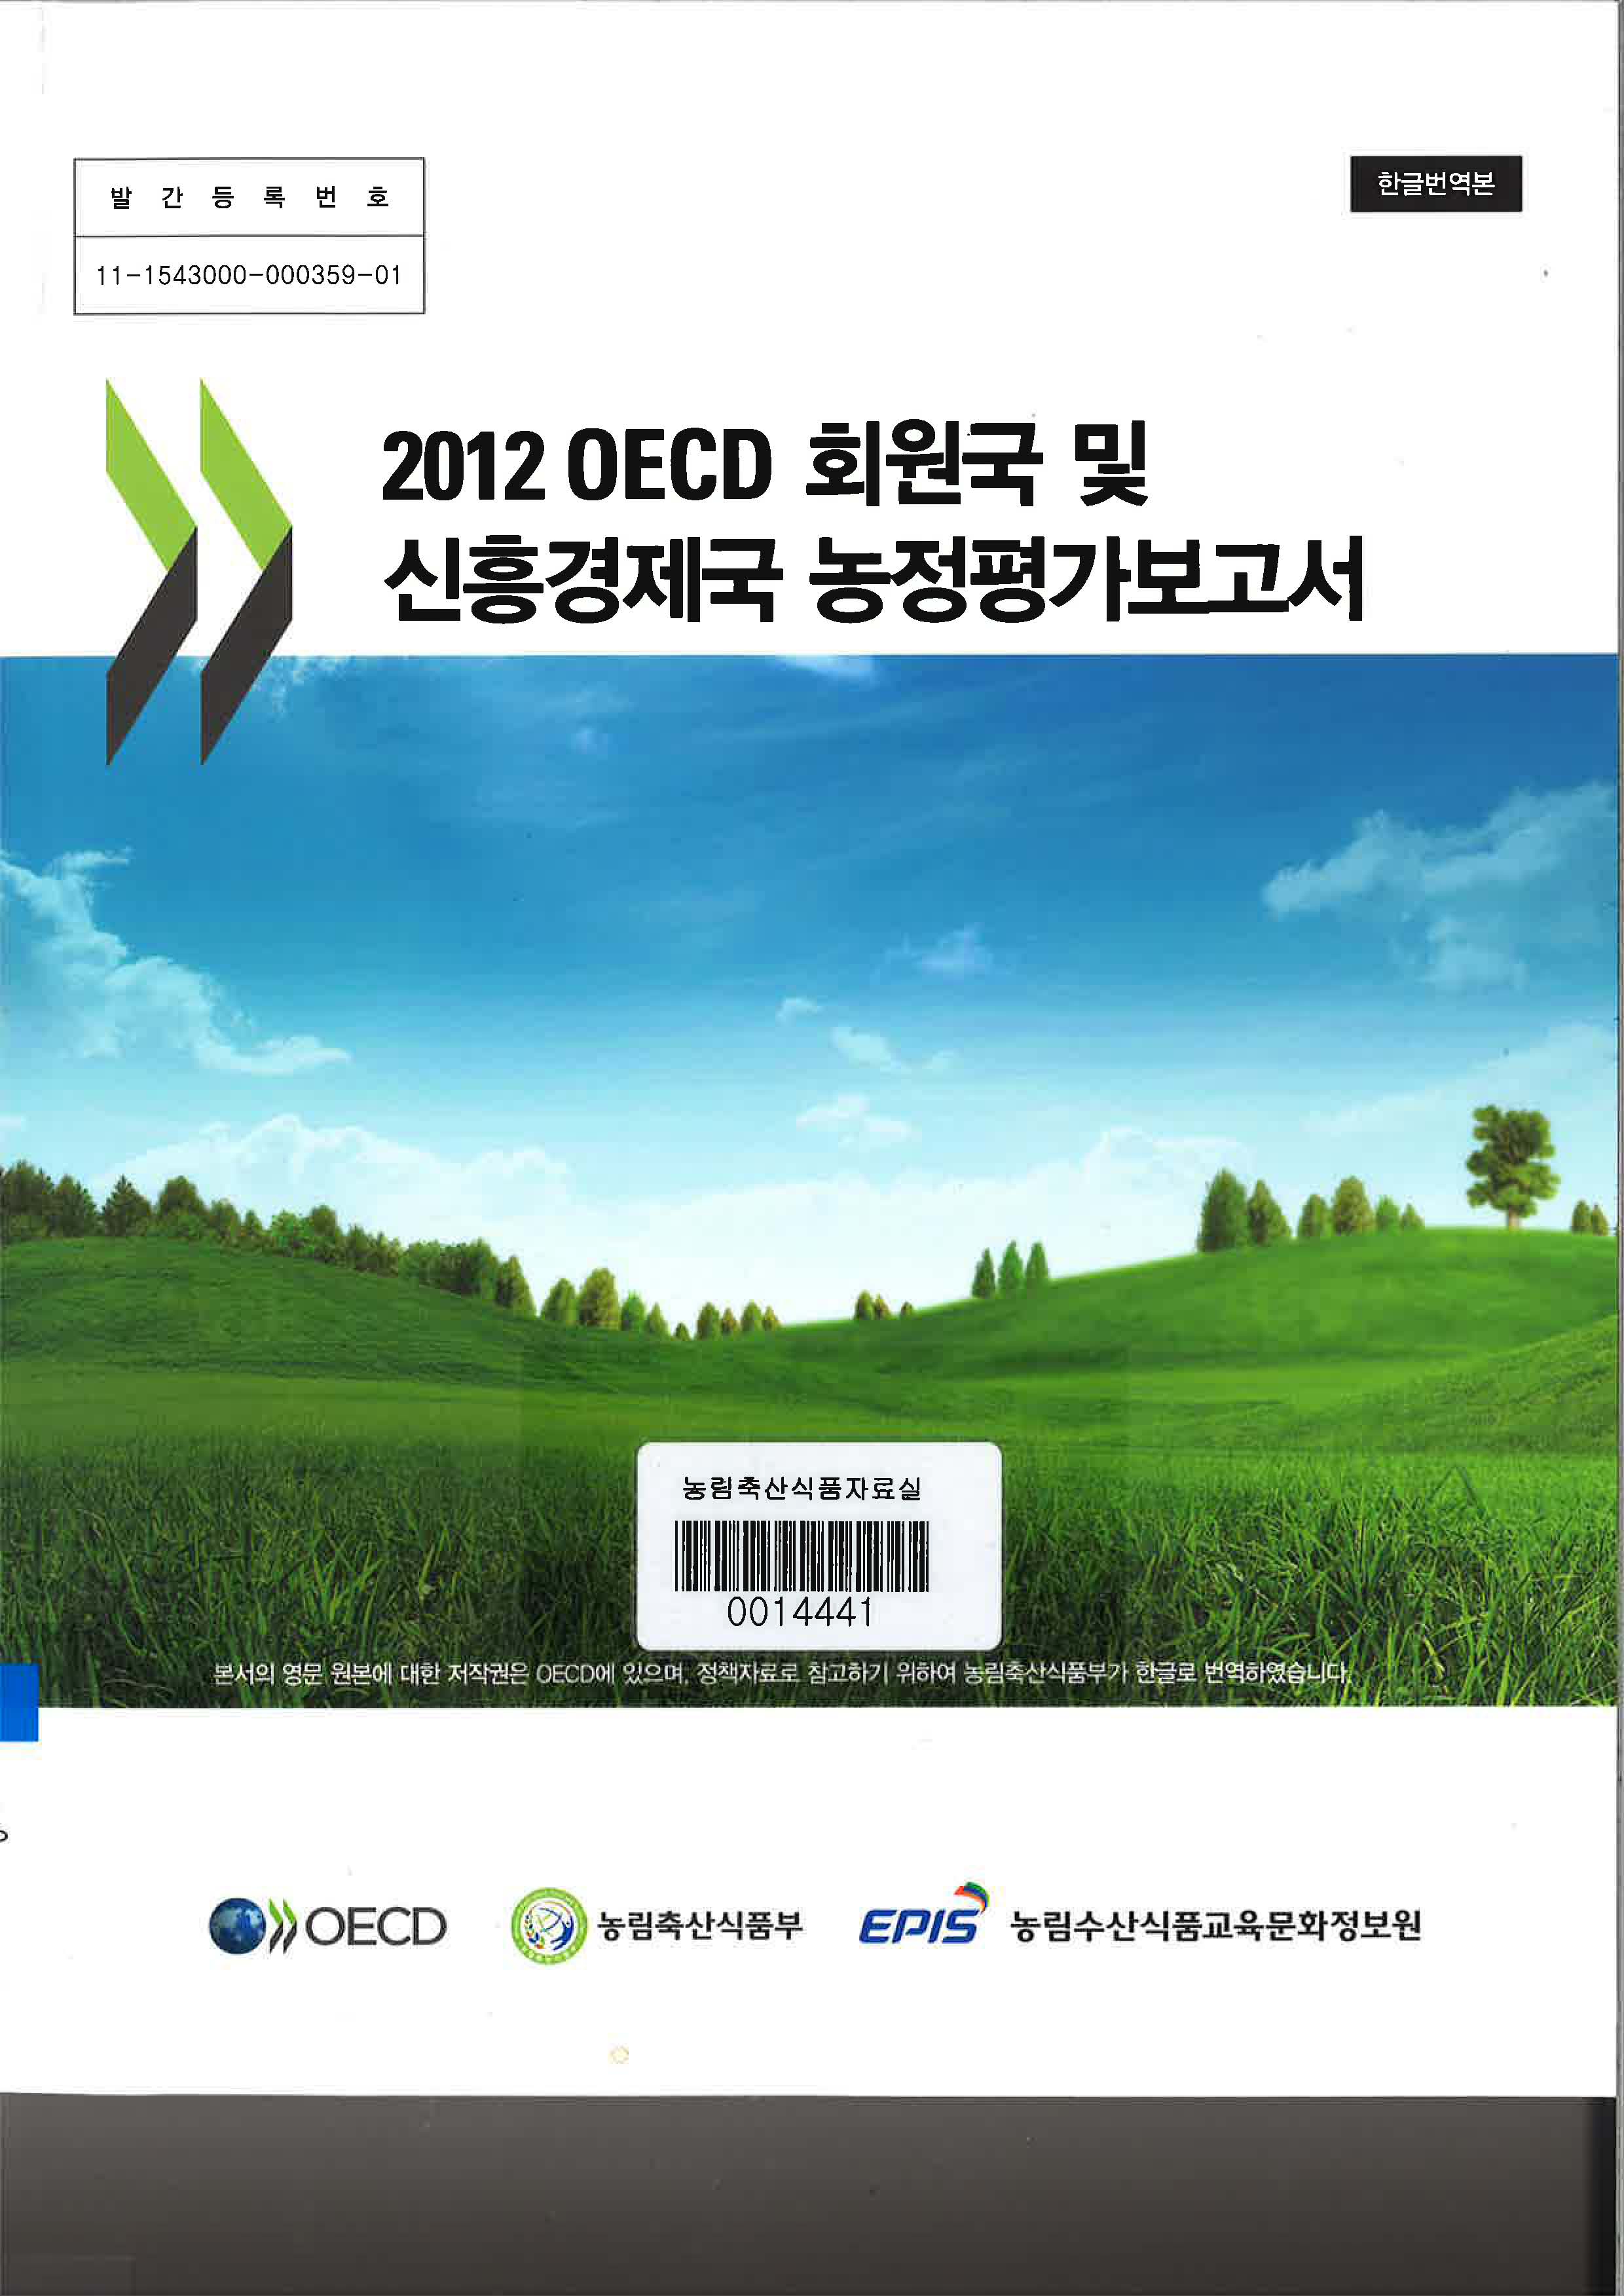 2012 OECD 회원국 및 신흥경제국 농정평가보고서